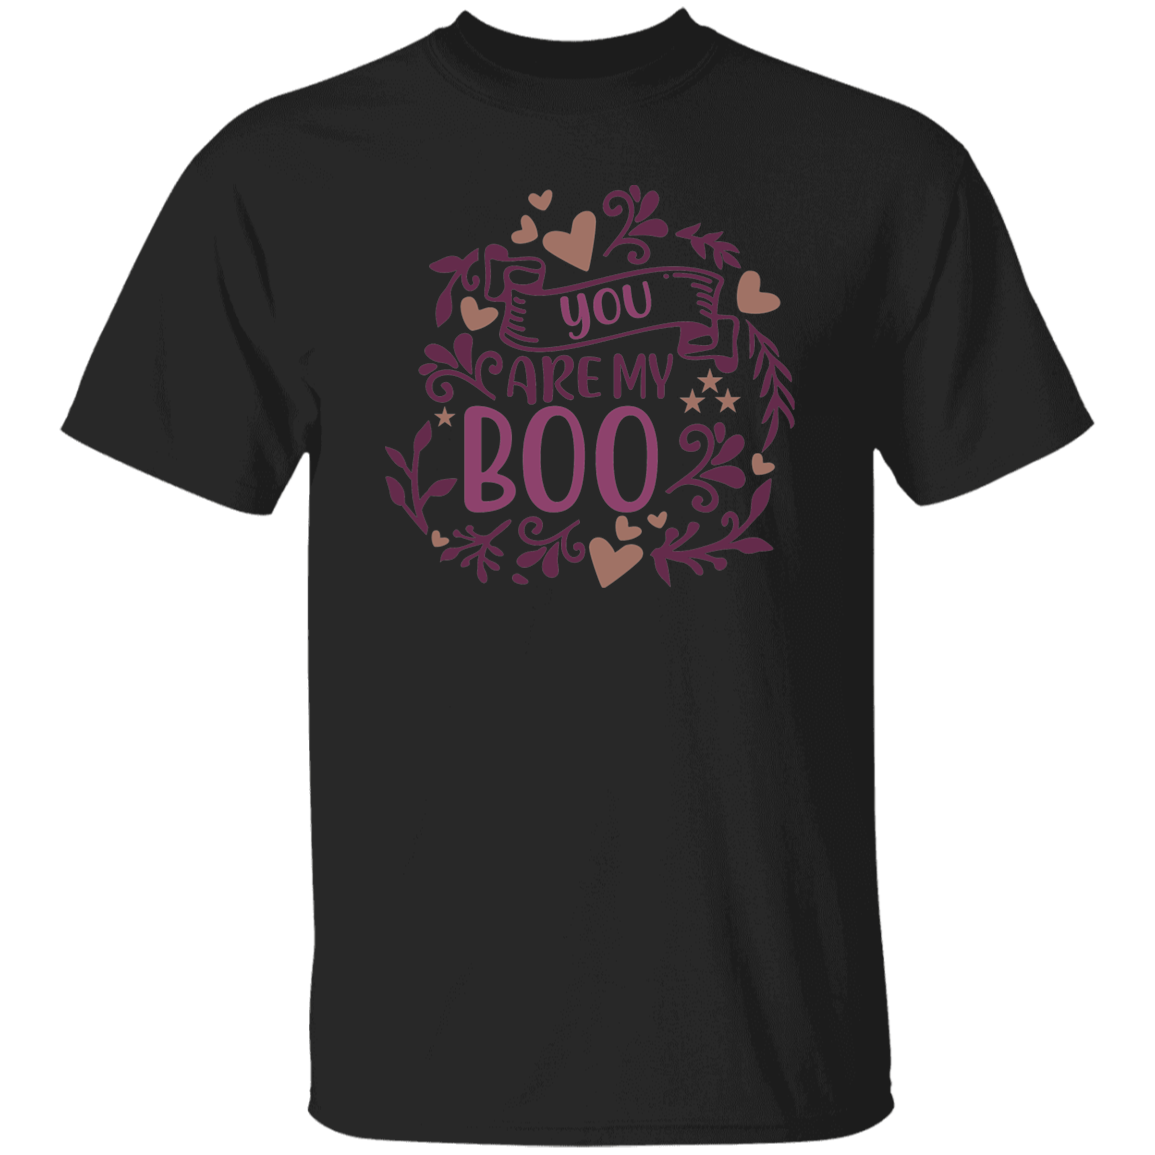 Boo T-Shirt